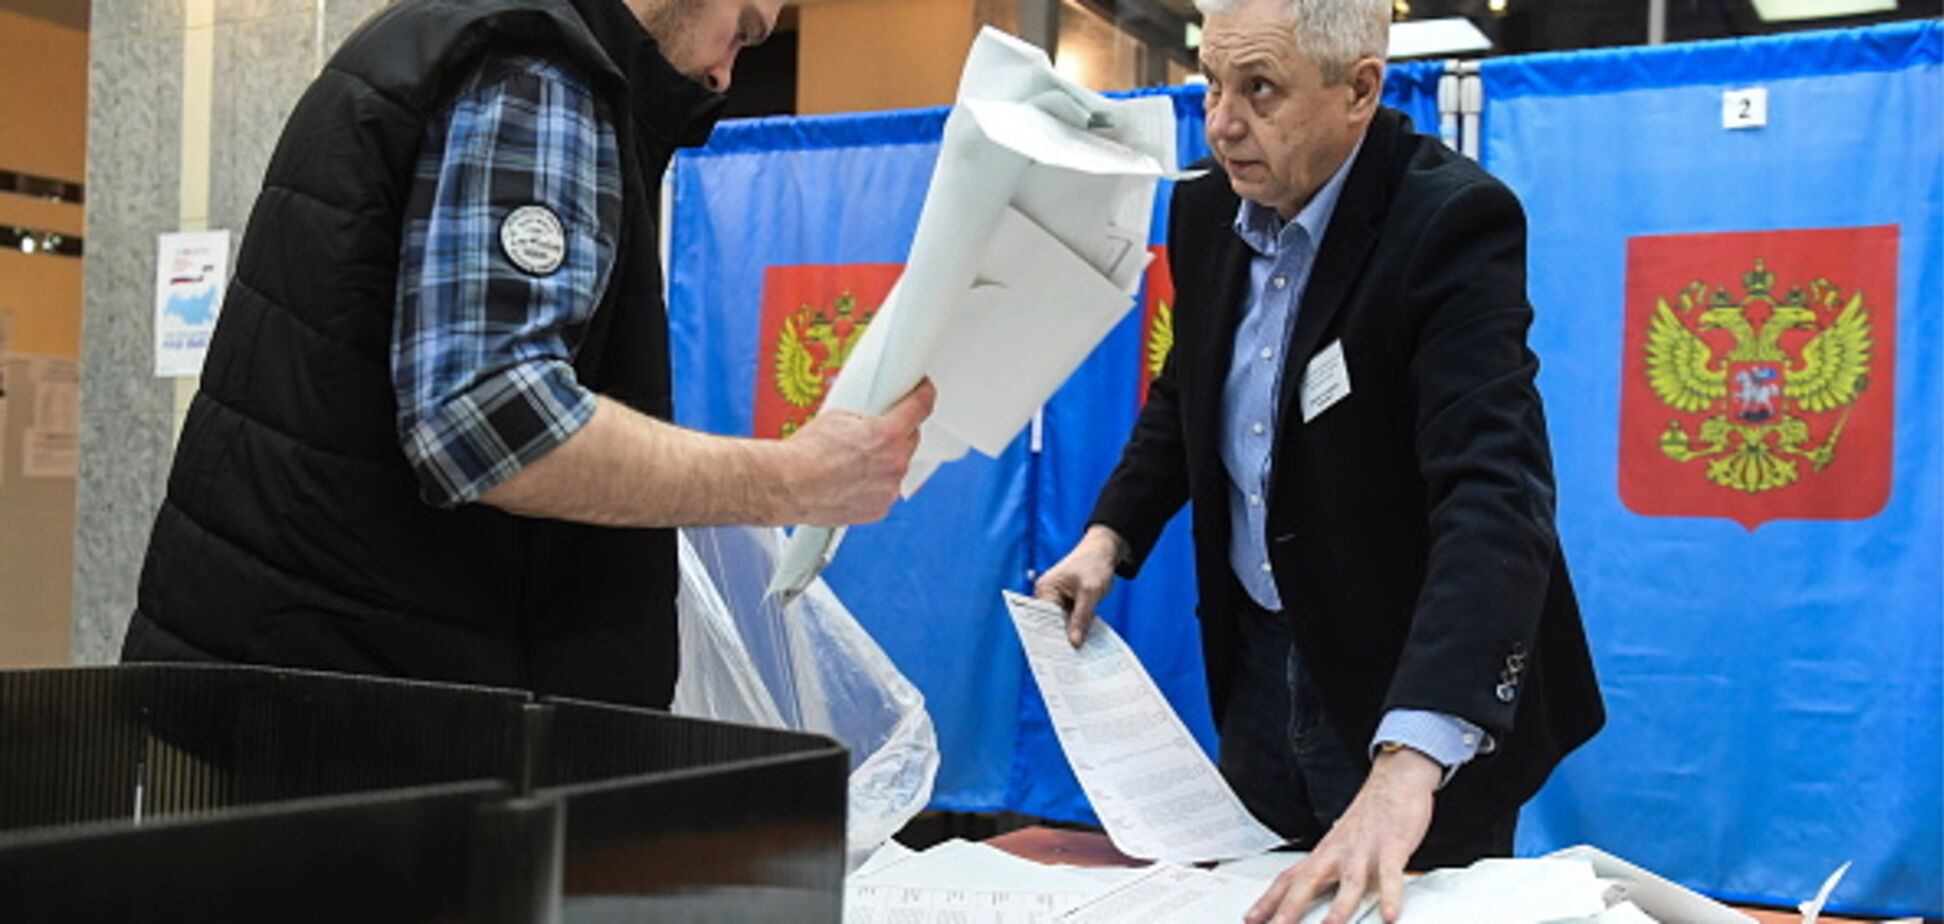 У Росії розкрили шокуючу фальсифікацію виборів Путіна